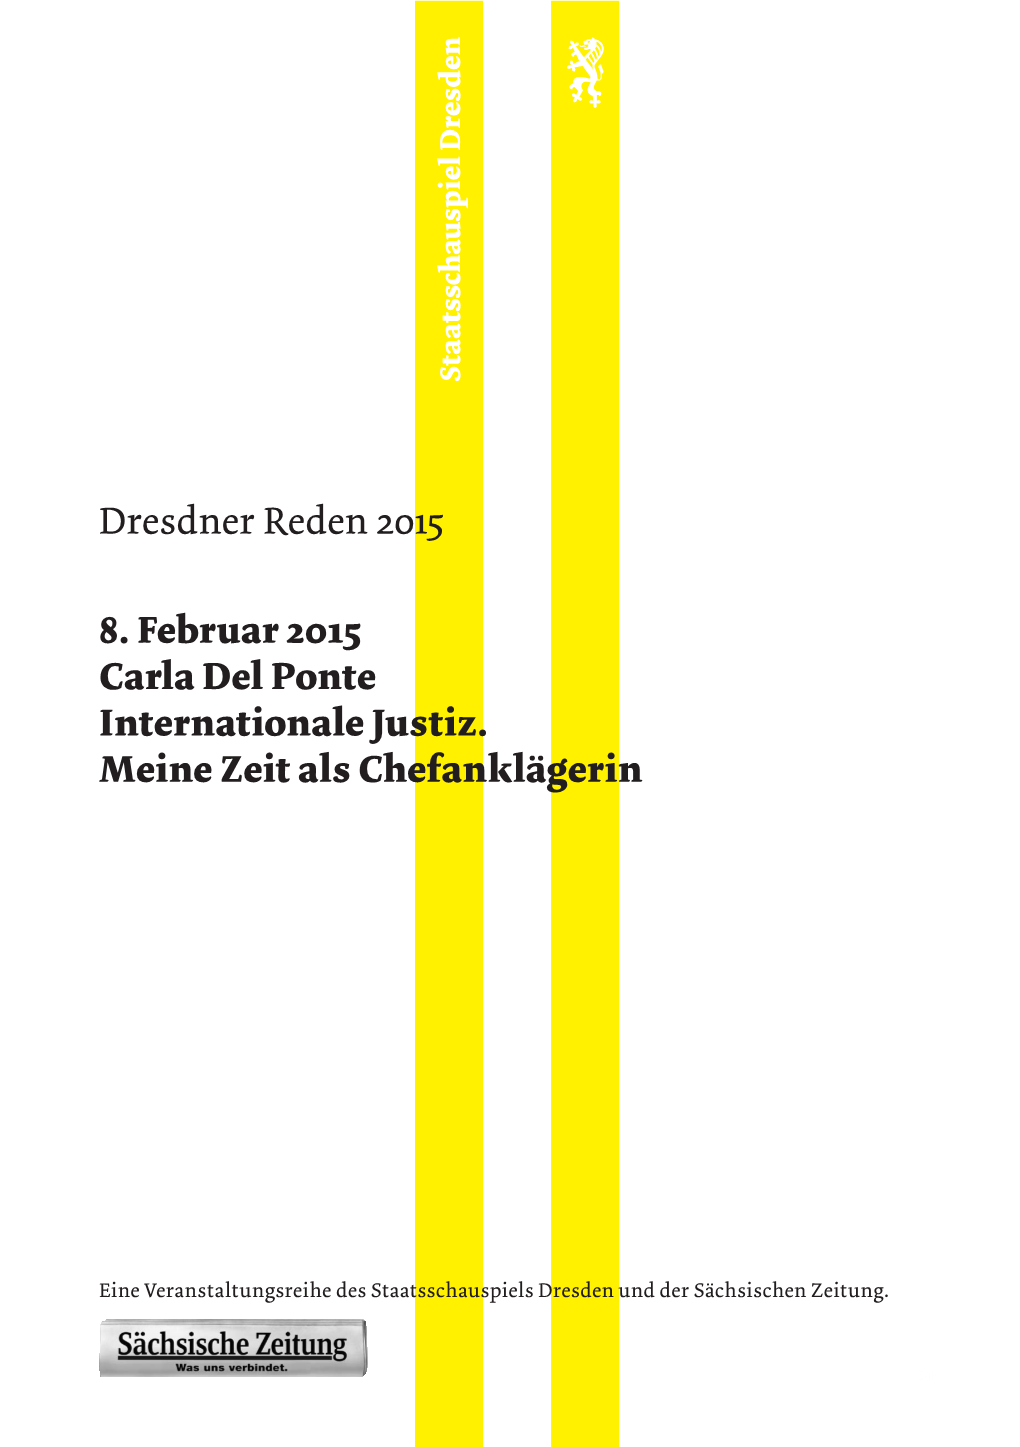 Dresdner Rede Carla Del Ponte